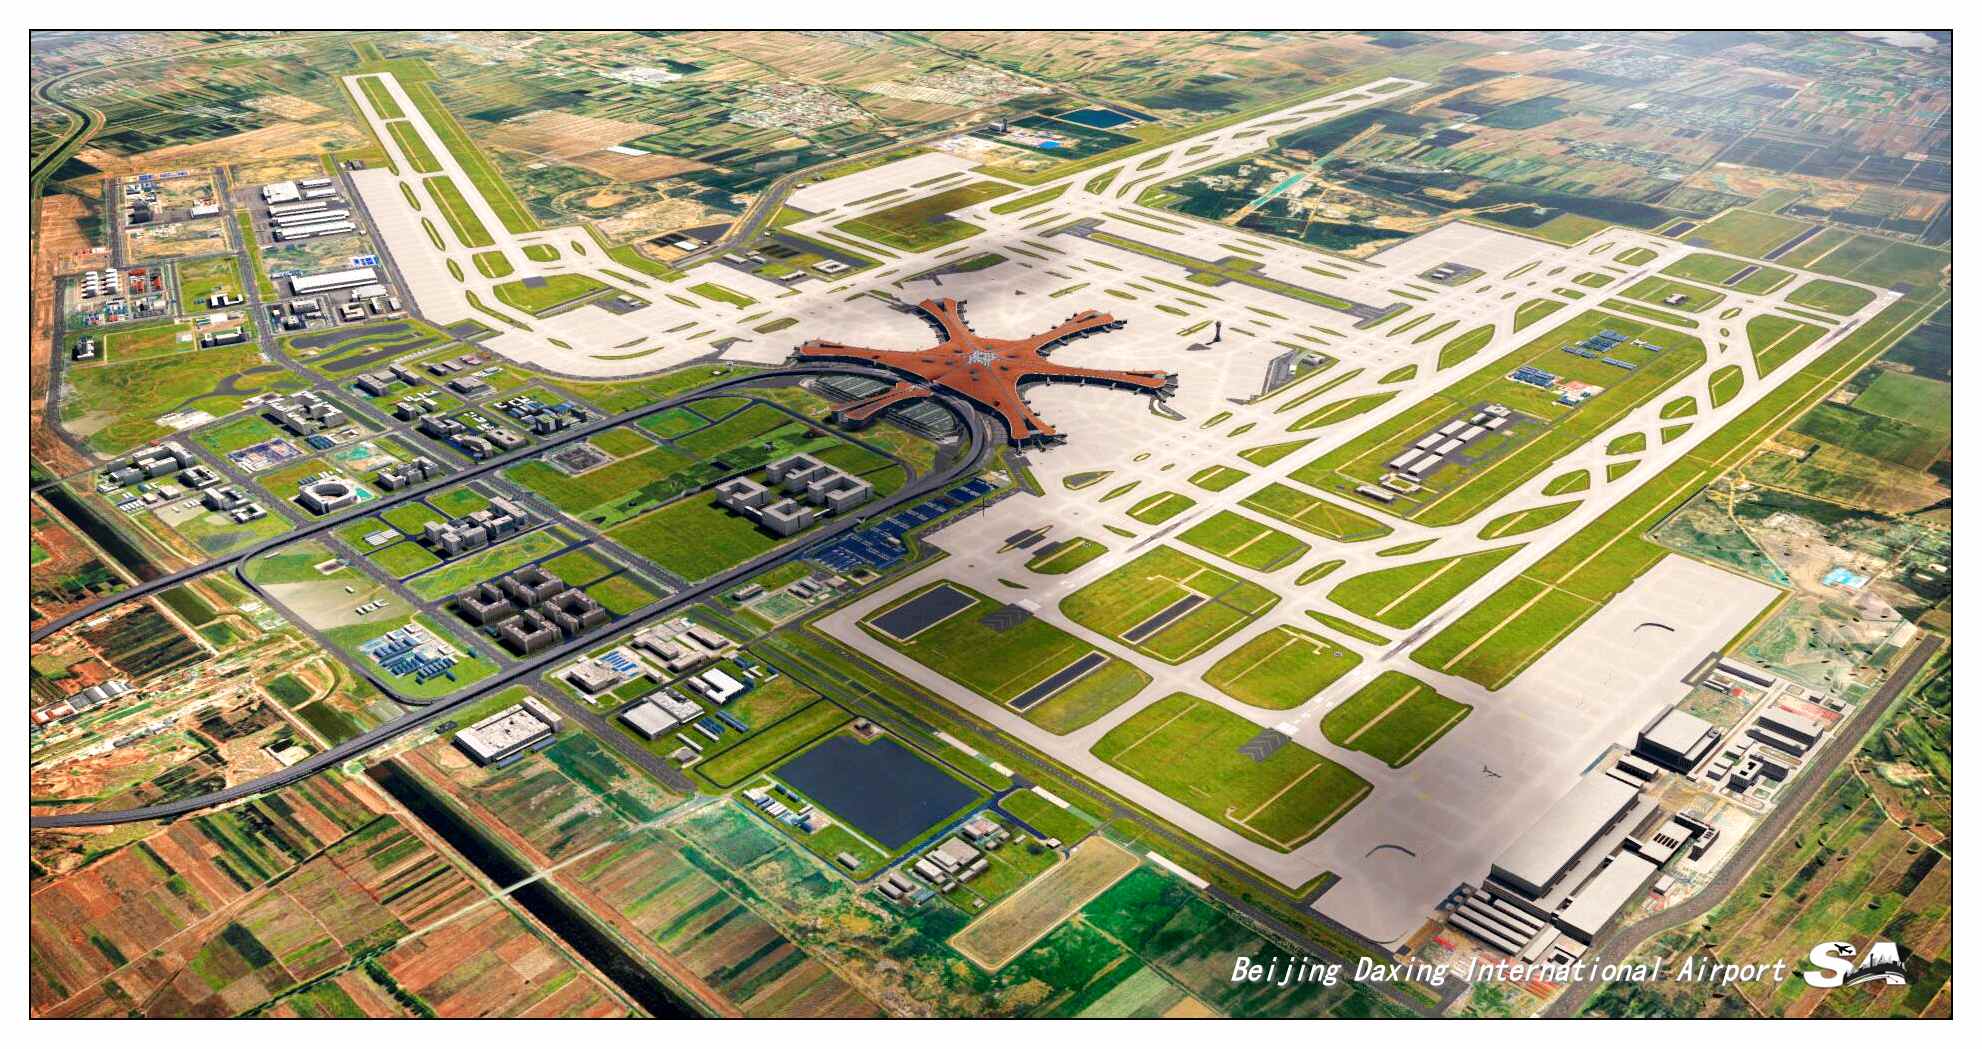 【X-Plane】ZBAD北京大兴国际机场-正式发布-1679 